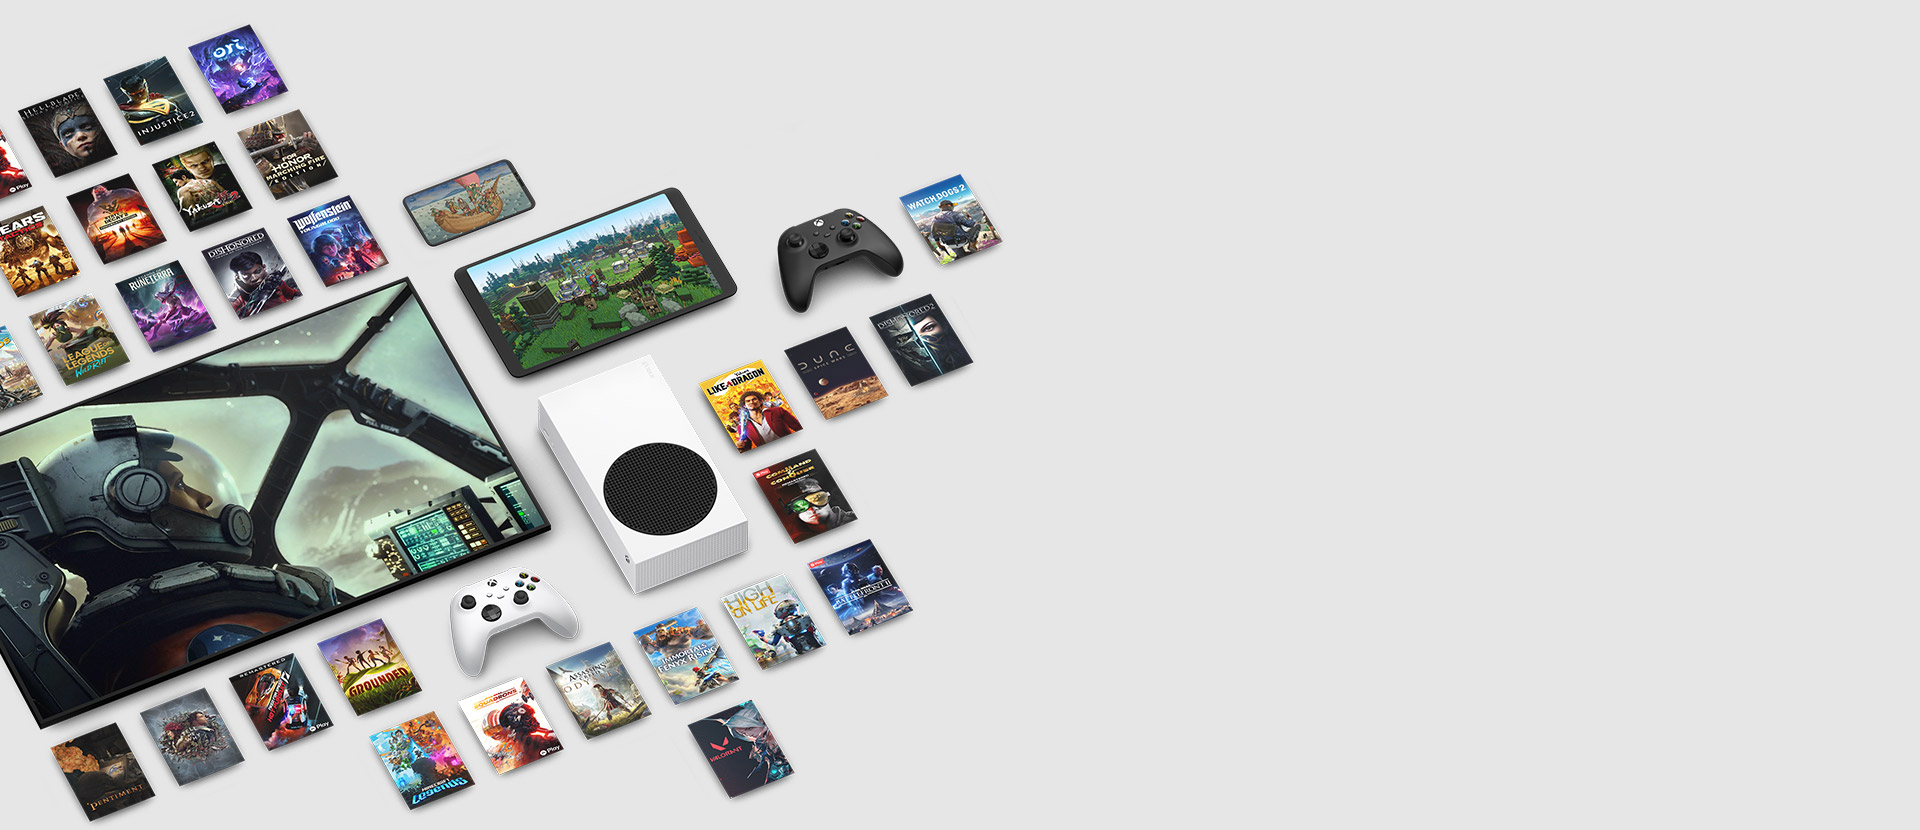 Kuvitusta useista Xbox Game Pass Ultimatella saatavilla olevista peleistä. Kuvituksen keskellä on useita laitteita, kuten konsoli, matkapuhelin, tabletti, älytelevisio ja ohjaimia.